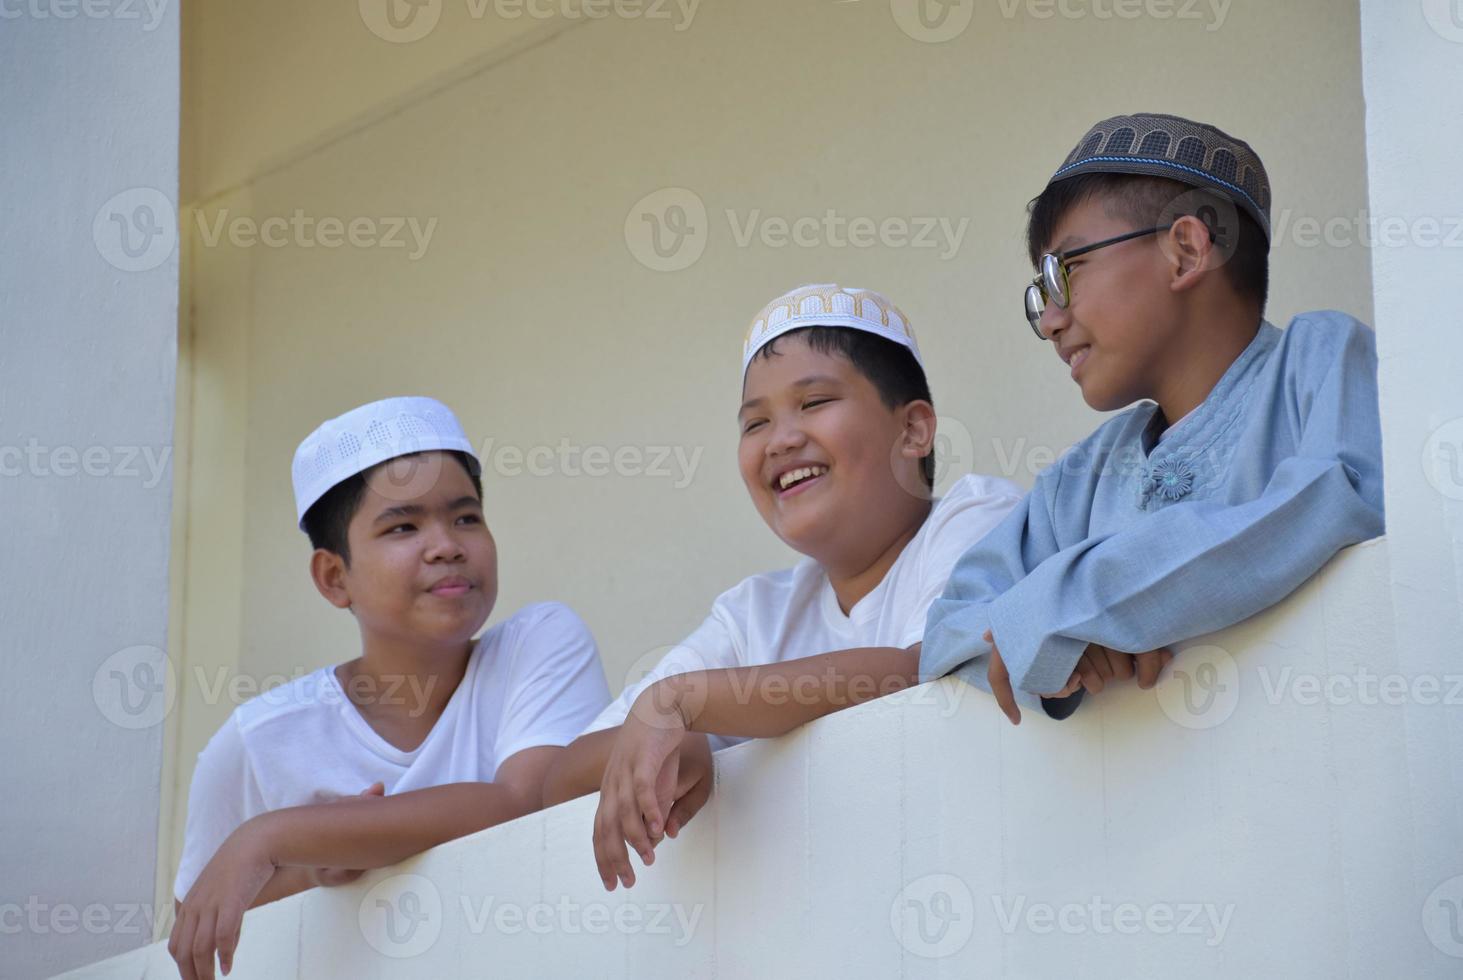 jovens muçulmanos asiáticos estão passando um tempo com seus amigos na varanda de uma mesquita ou escola religiosa, foco suave e seletivo. foto